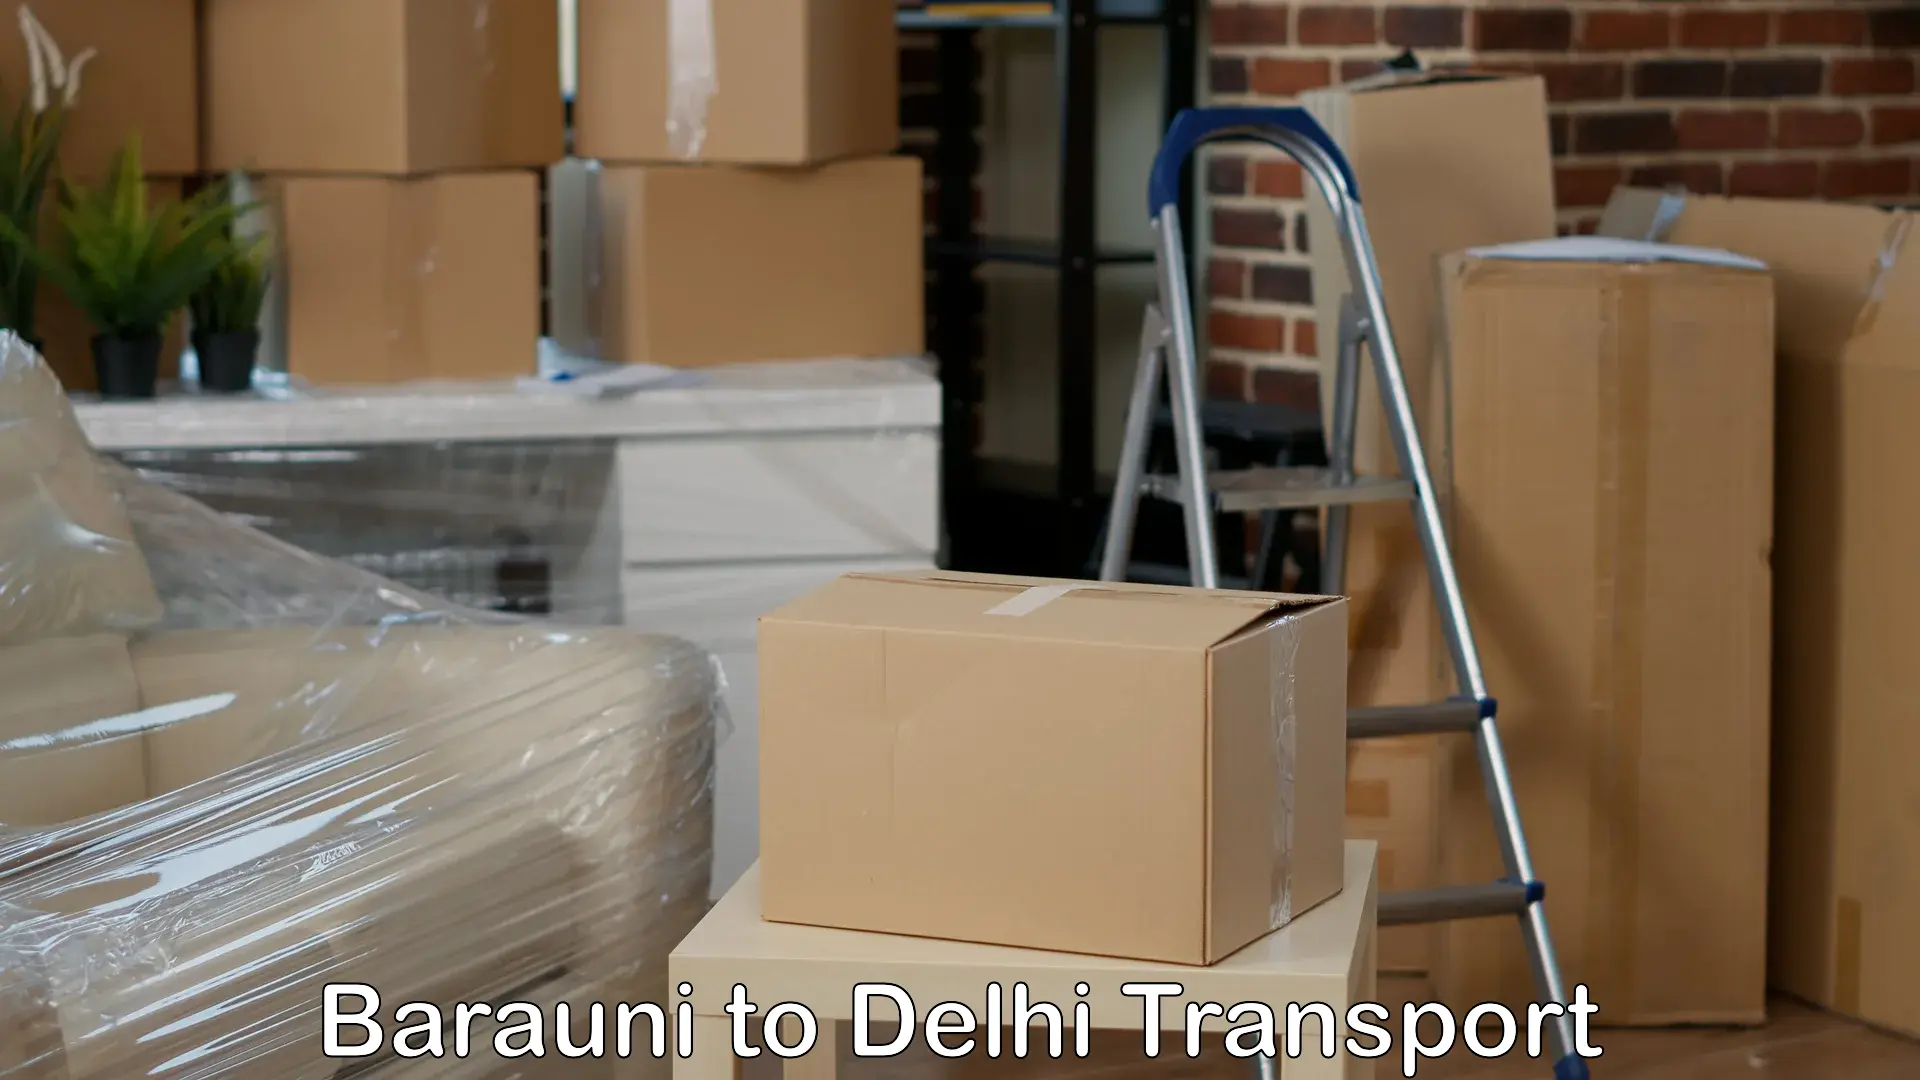 Delivery service Barauni to Ramesh Nagar